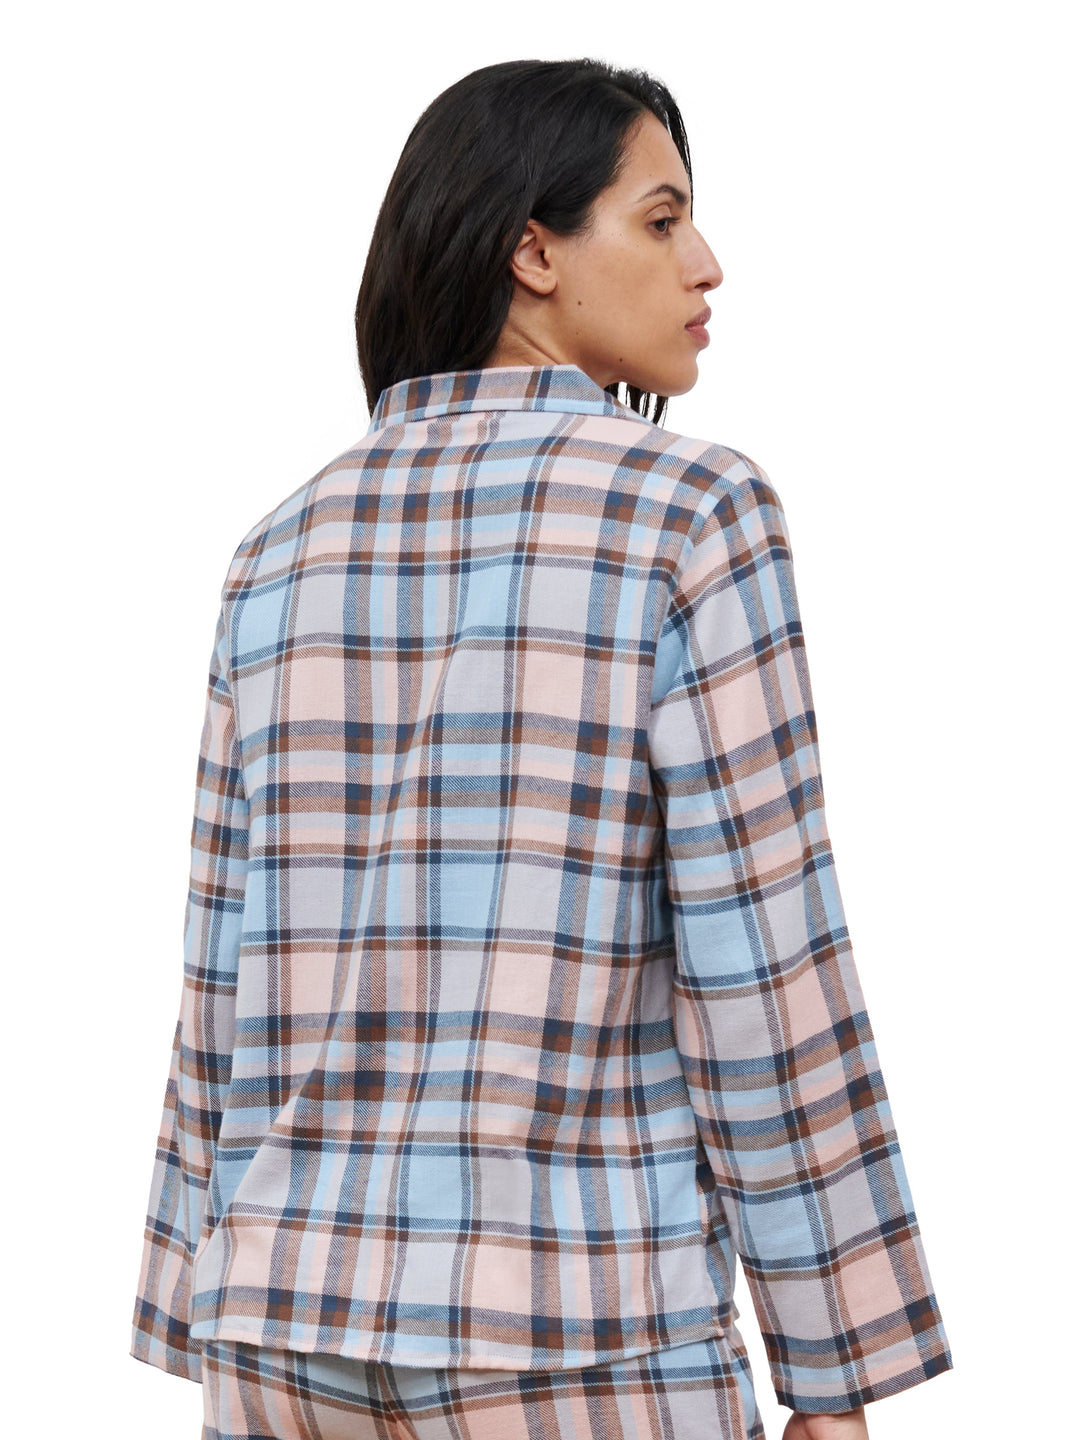 Femilet - Top pigiama con stampa a quadri caldi Femilet